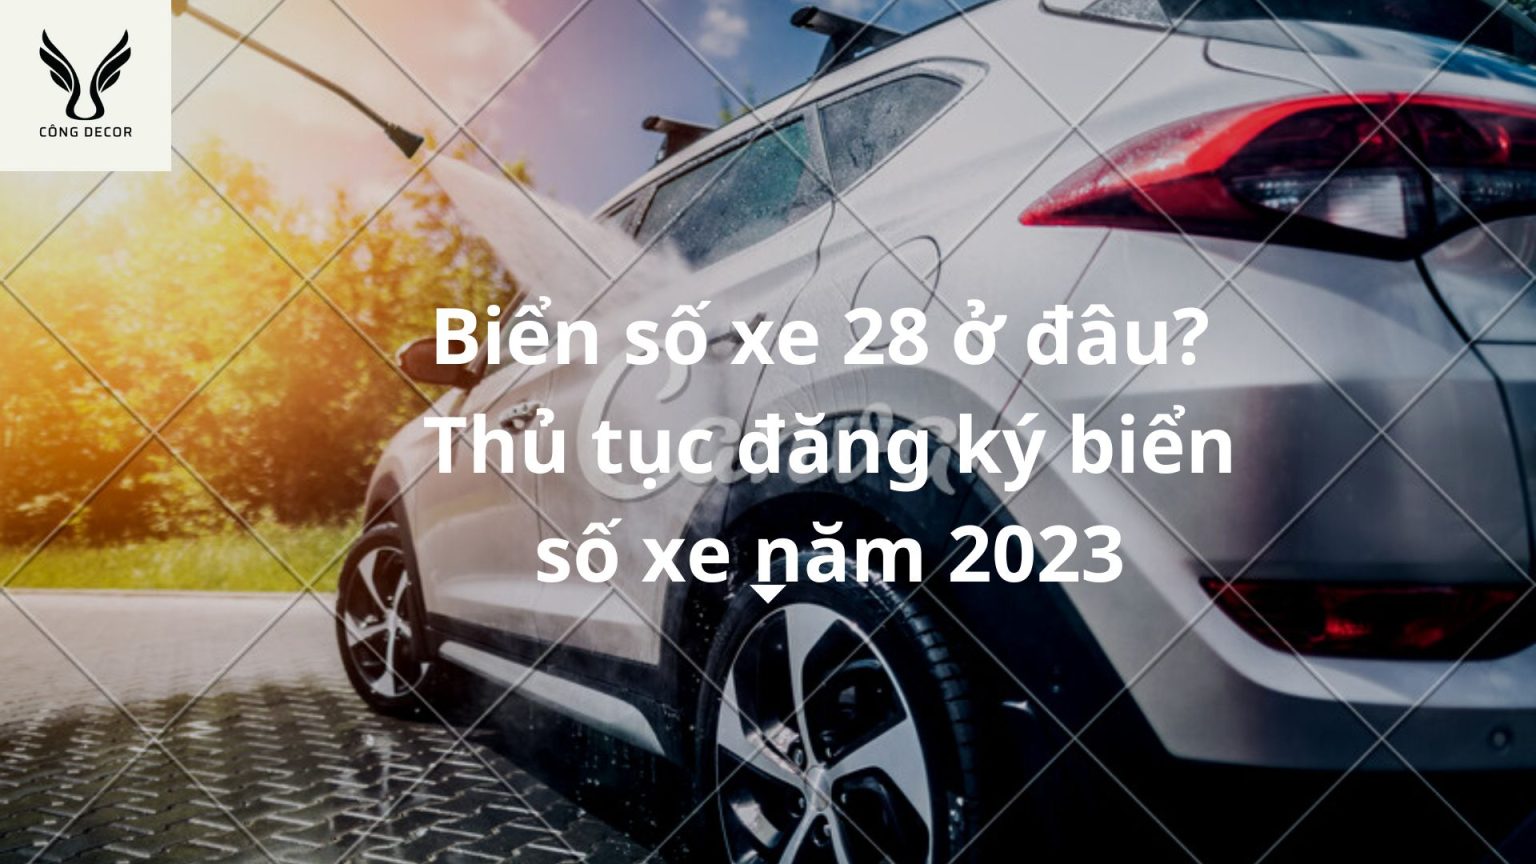 Biển số xe 28 ở đâu? Thuộc tỉnh nào? Thủ tục đăng ký biển số xe năm 2023